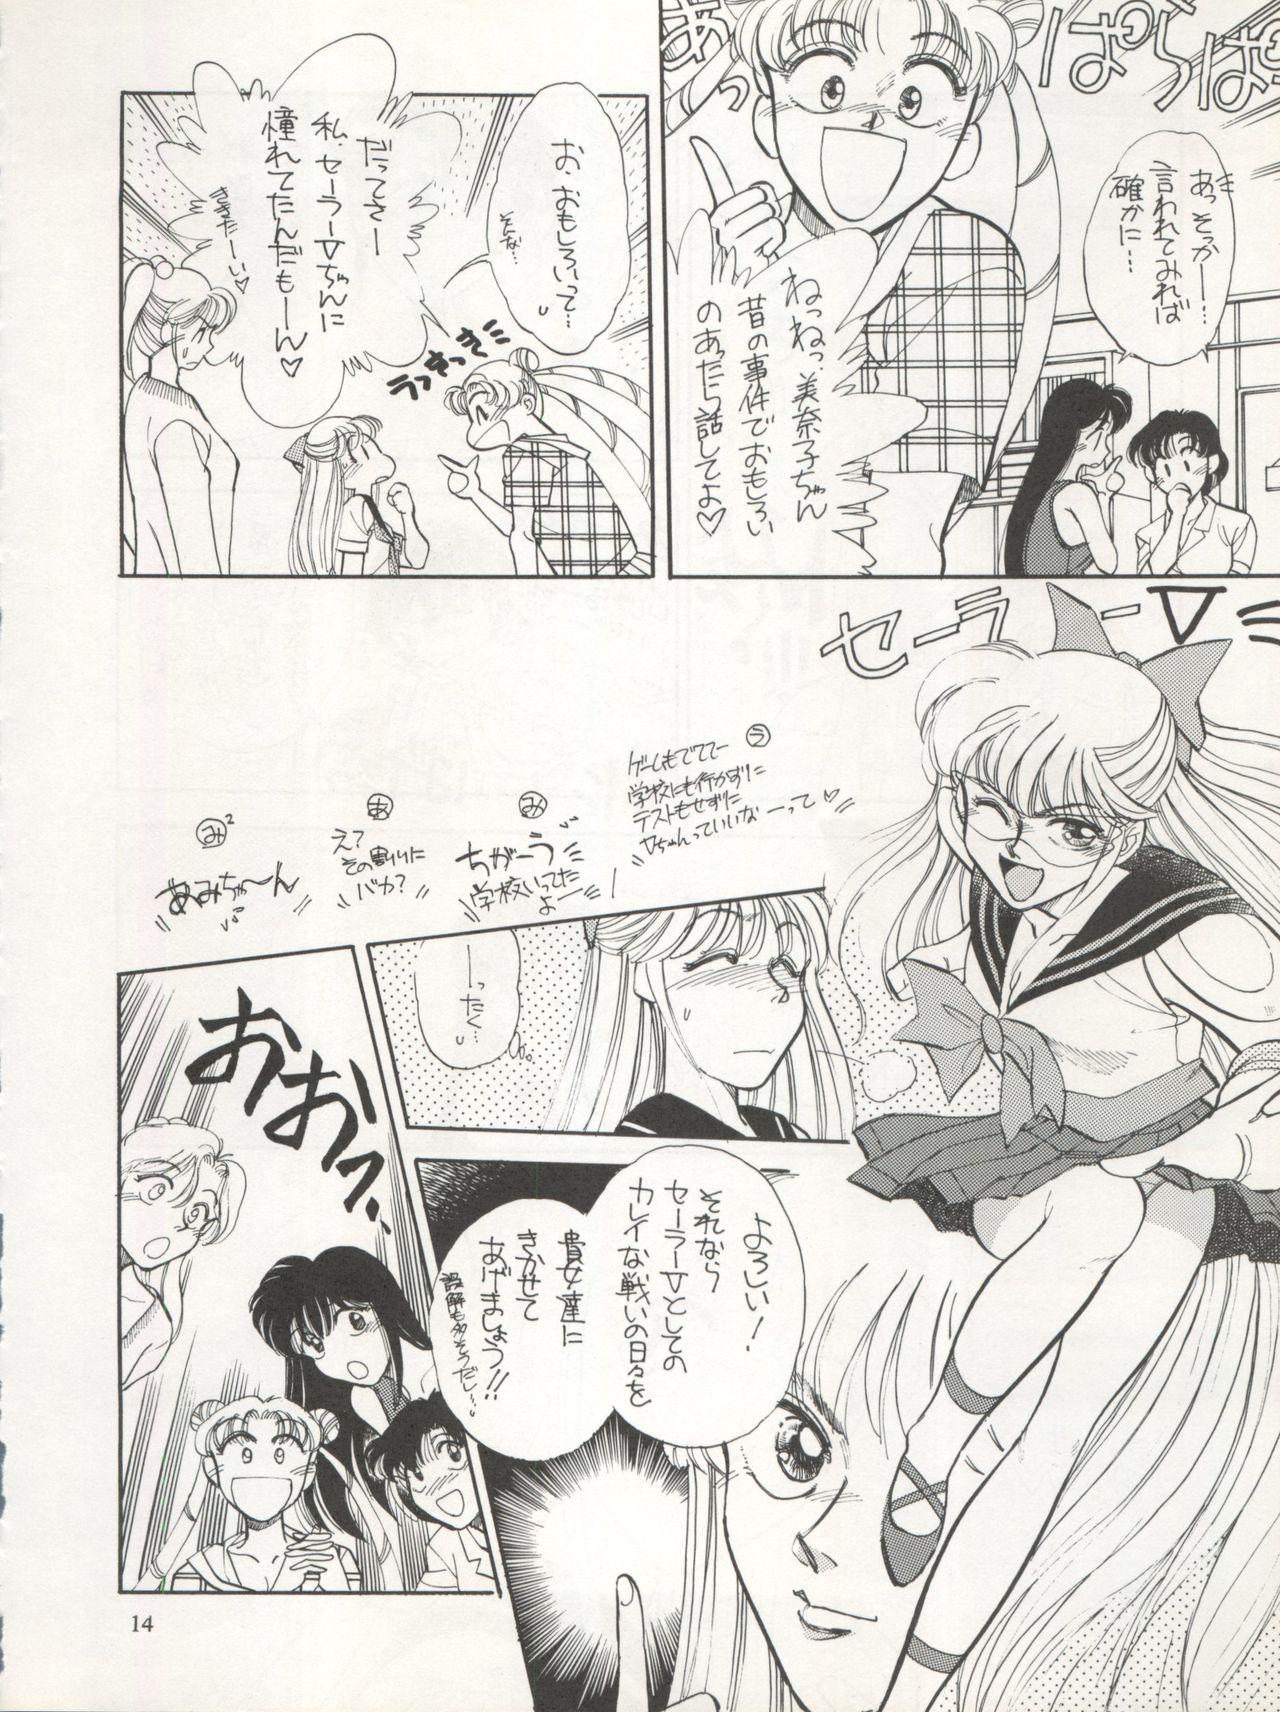 Busty Sekai Seifuku Sailor Fuku 5 - Sailor moon Amateur Sex - Page 12